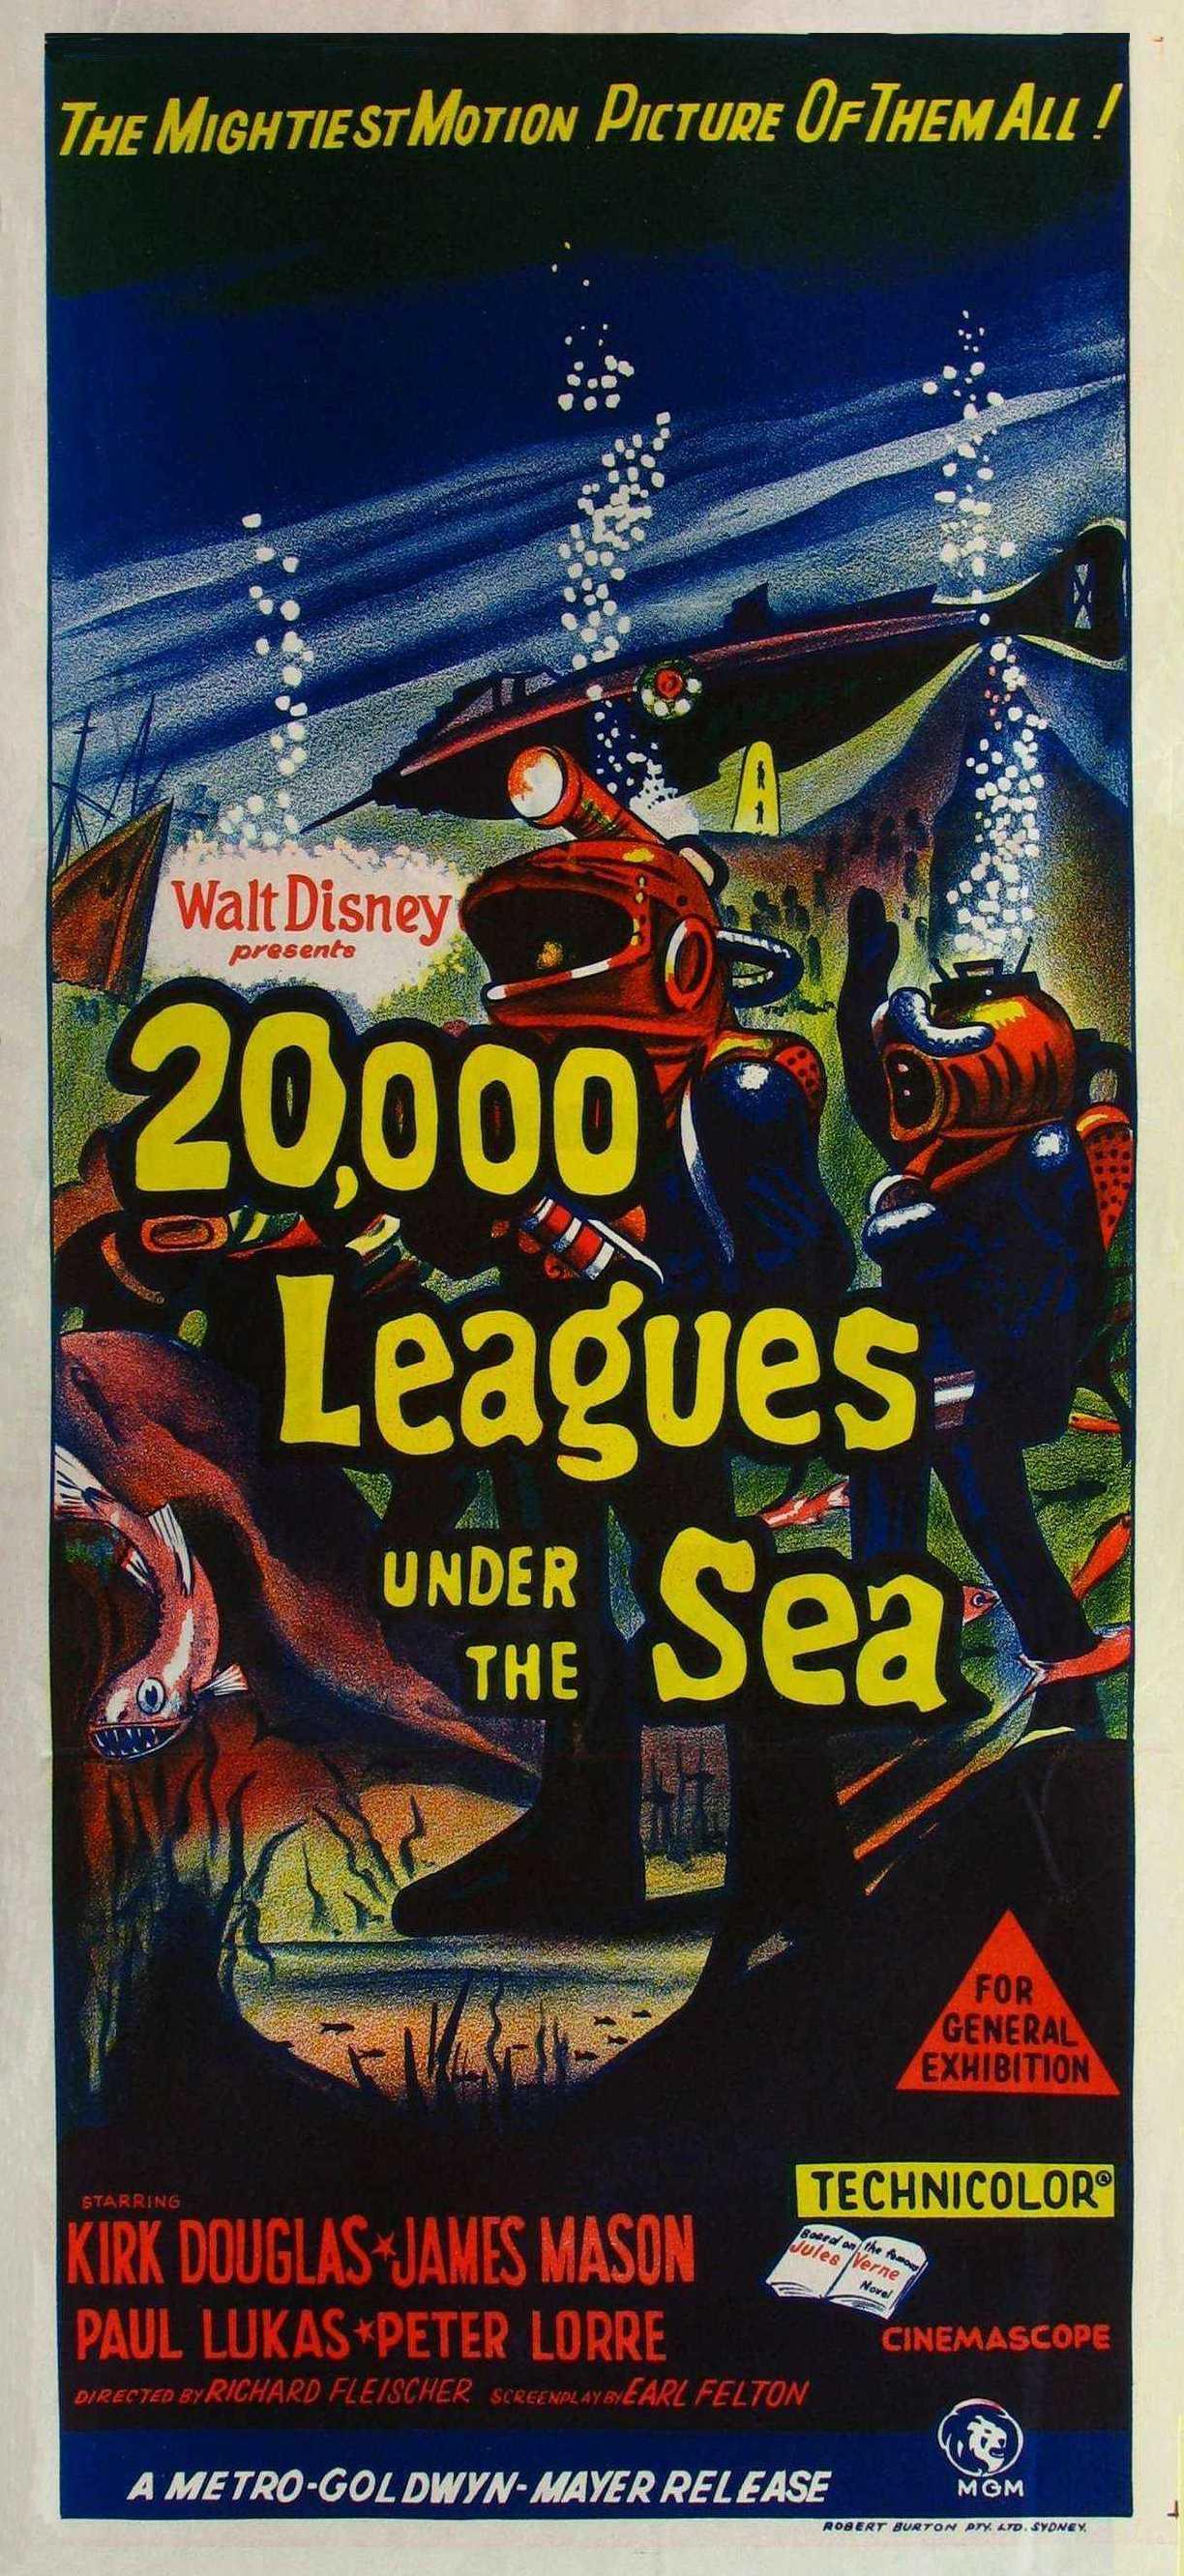 Постер фильма 20000 лье под водой | 20000 Leagues Under the Sea